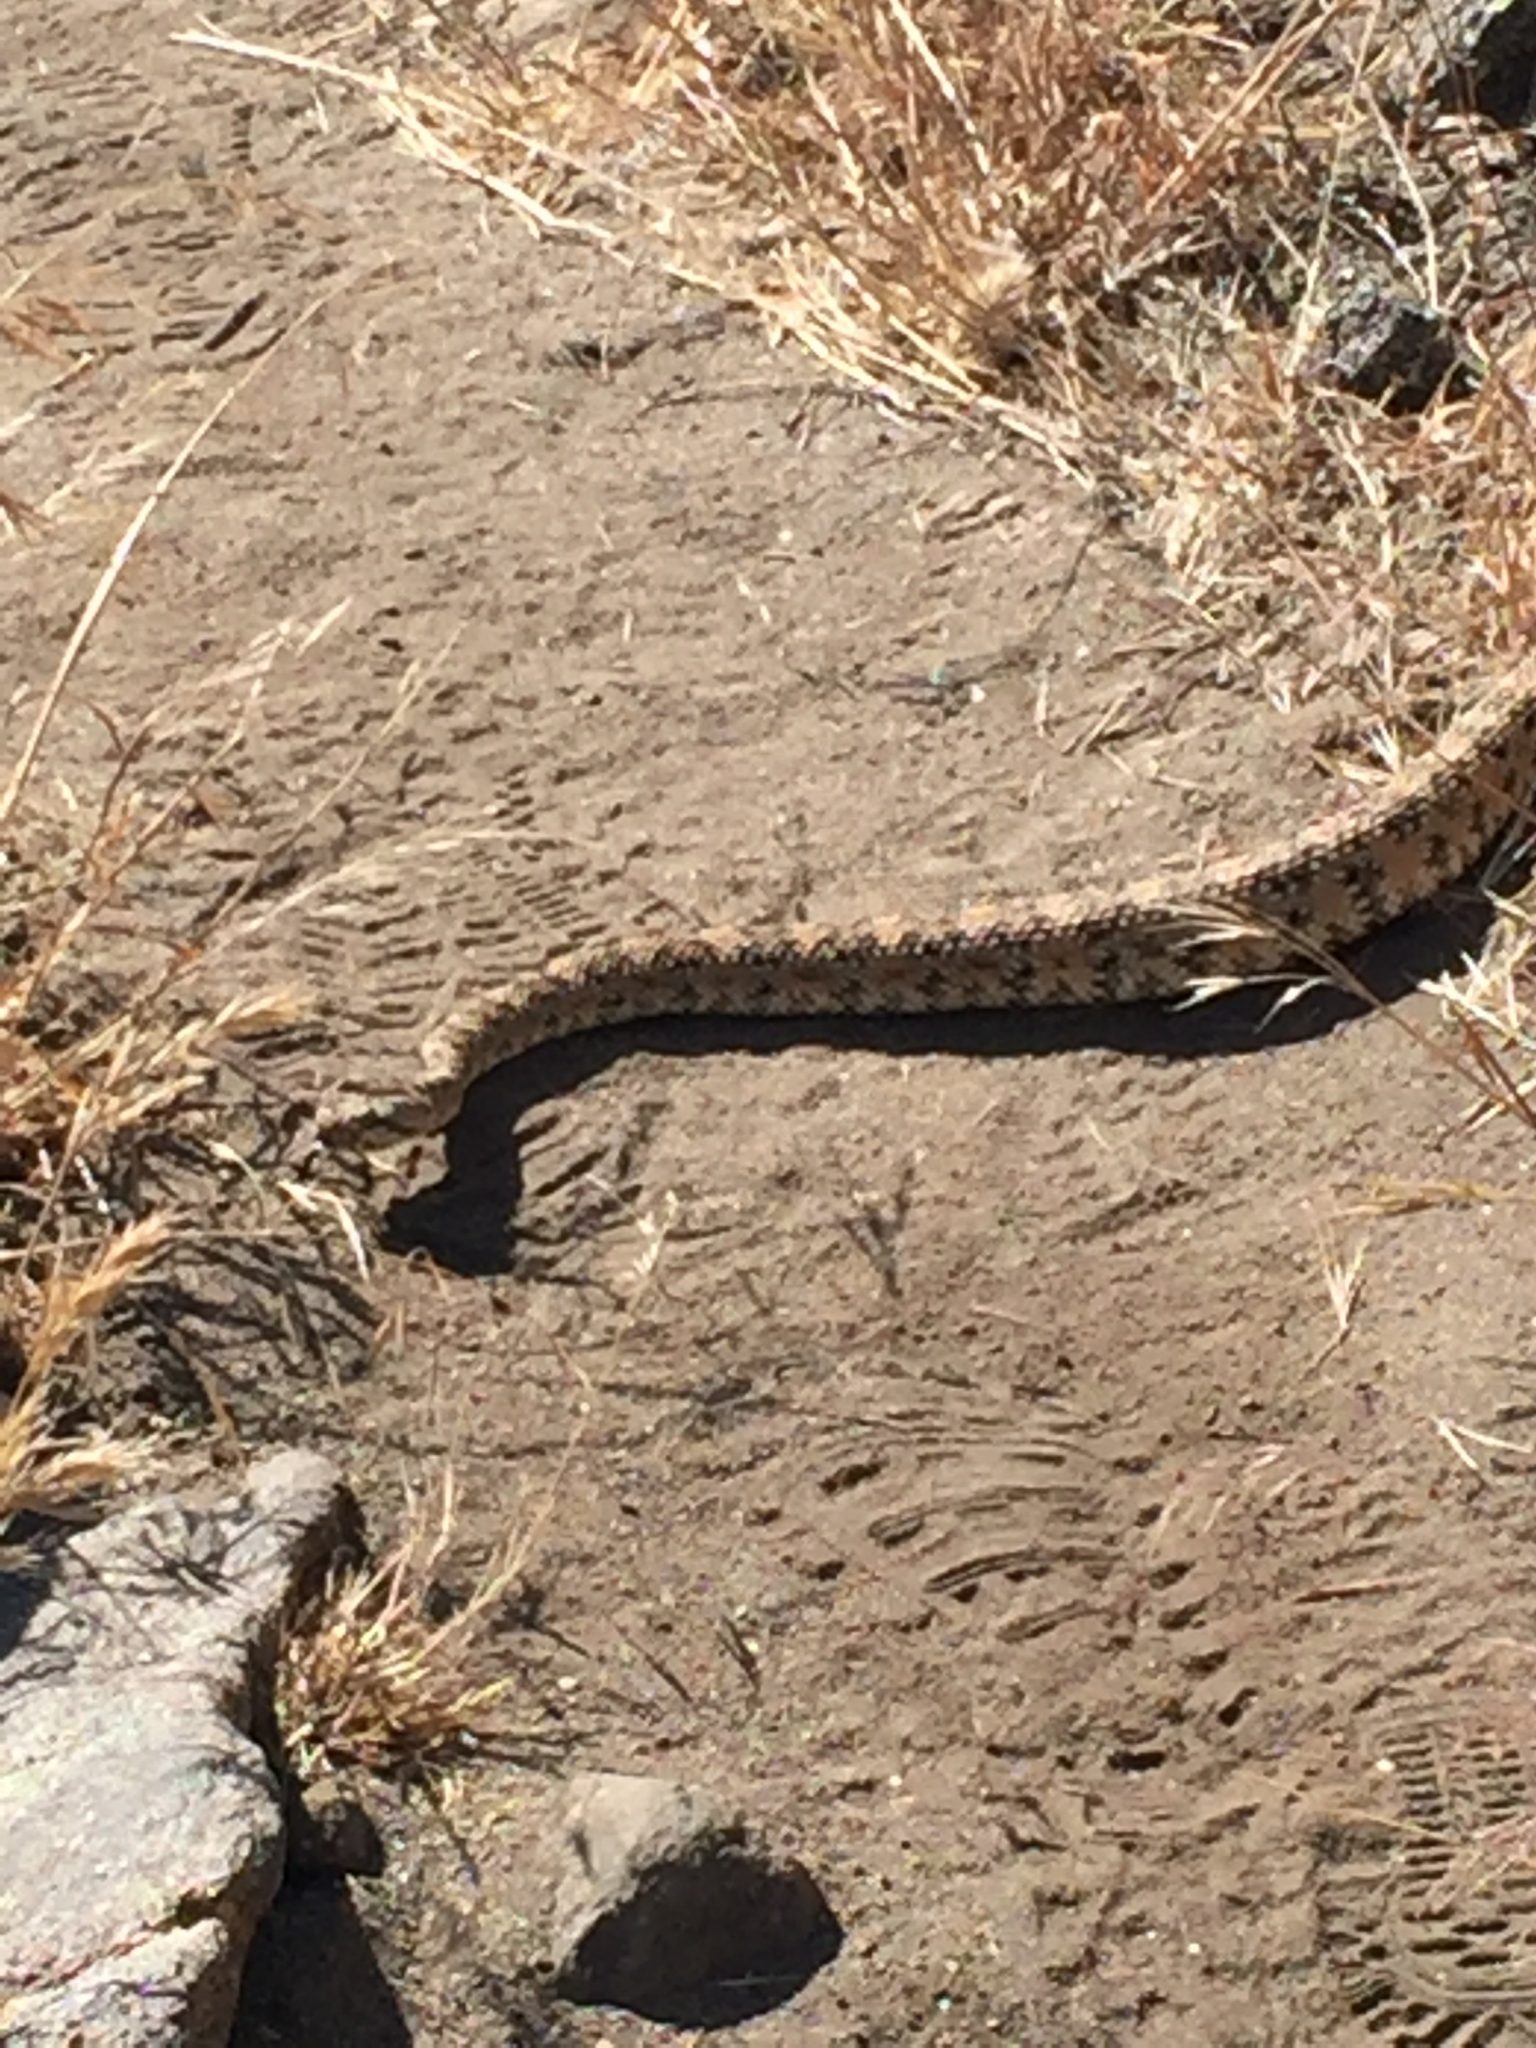 Rattlesnake crossing trail